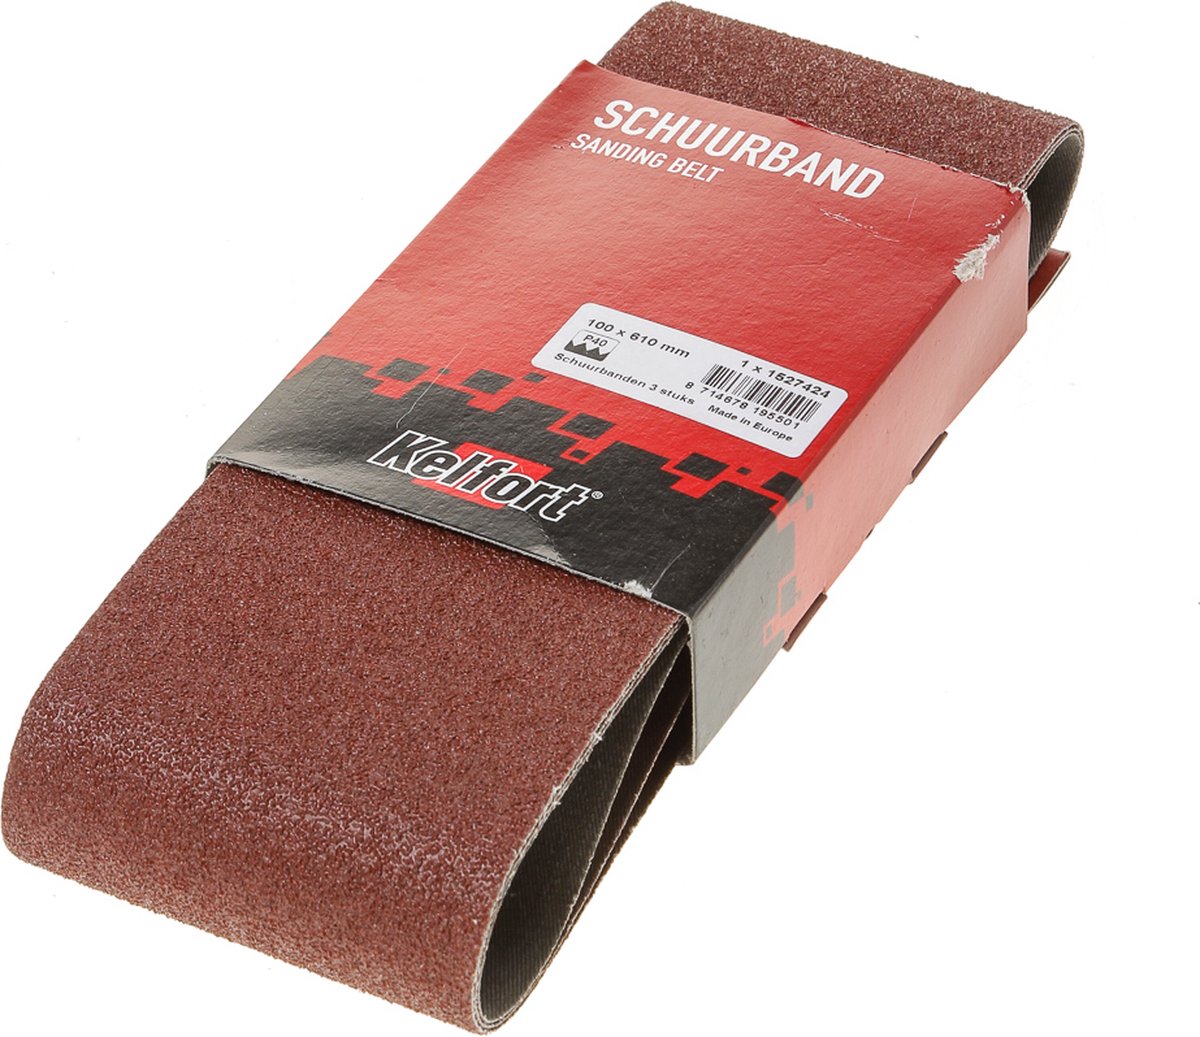 Schuurband 100x610 k40 (3)